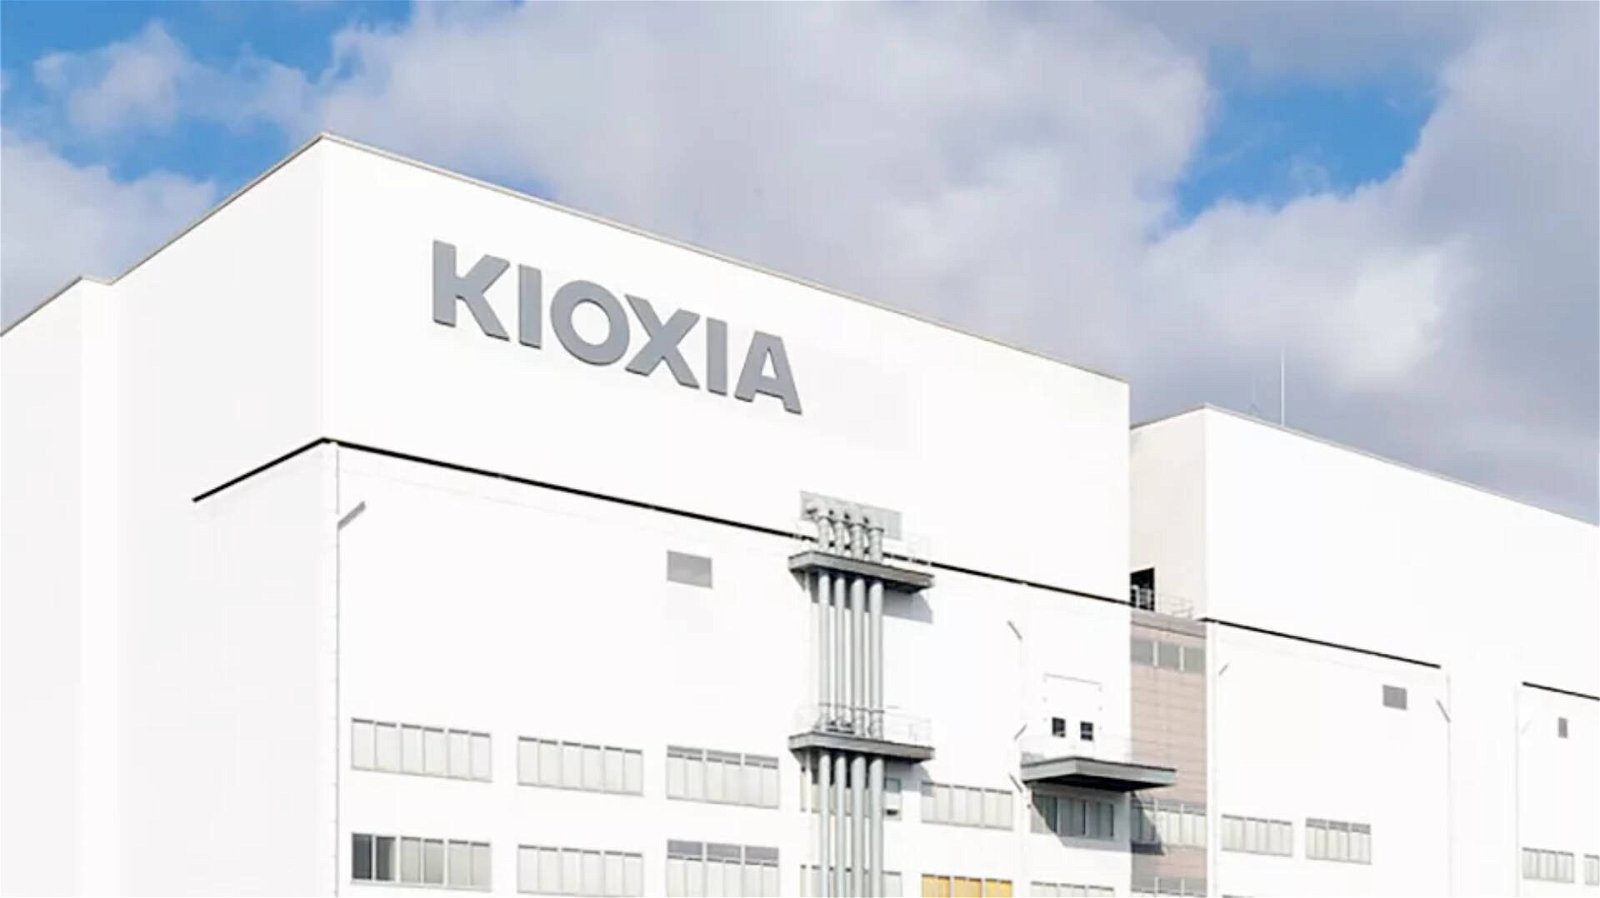 Immagine di Western Digital, continuano le trattative per l'acquisizione di Kioxia